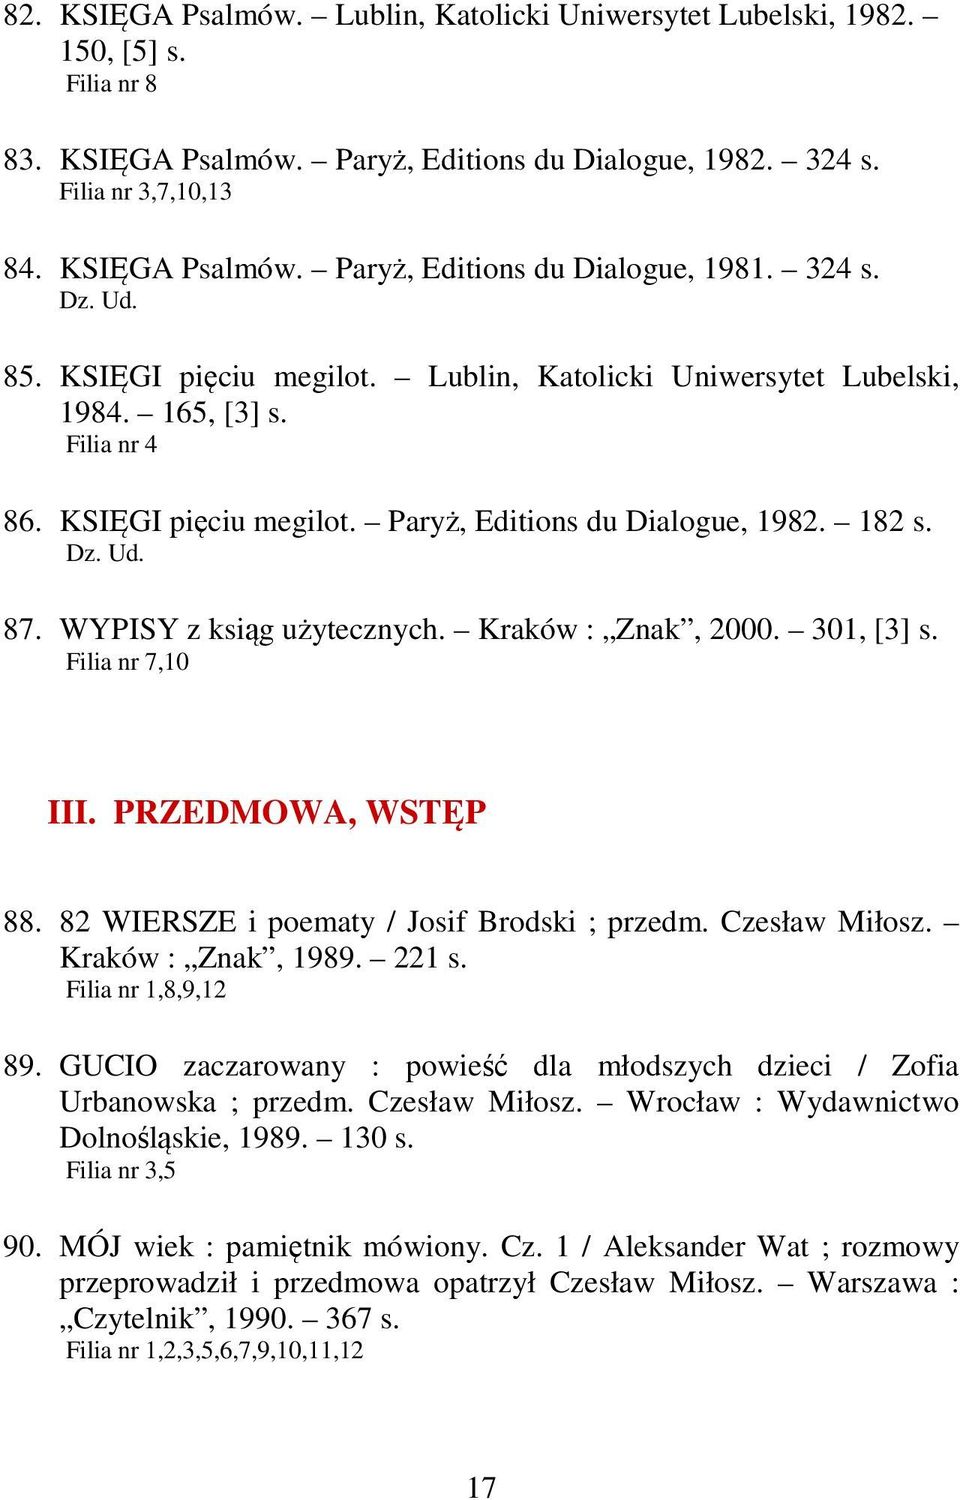 WYPISY z ksiąg użytecznych. Kraków : Znak, 2000. 301, [3] s. Filia nr 7,10 III. PRZEDMOWA, WSTĘP 88. 82 WIERSZE i poematy / Josif Brodski ; przedm. Czesław Miłosz. Kraków : Znak, 1989. 221 s.